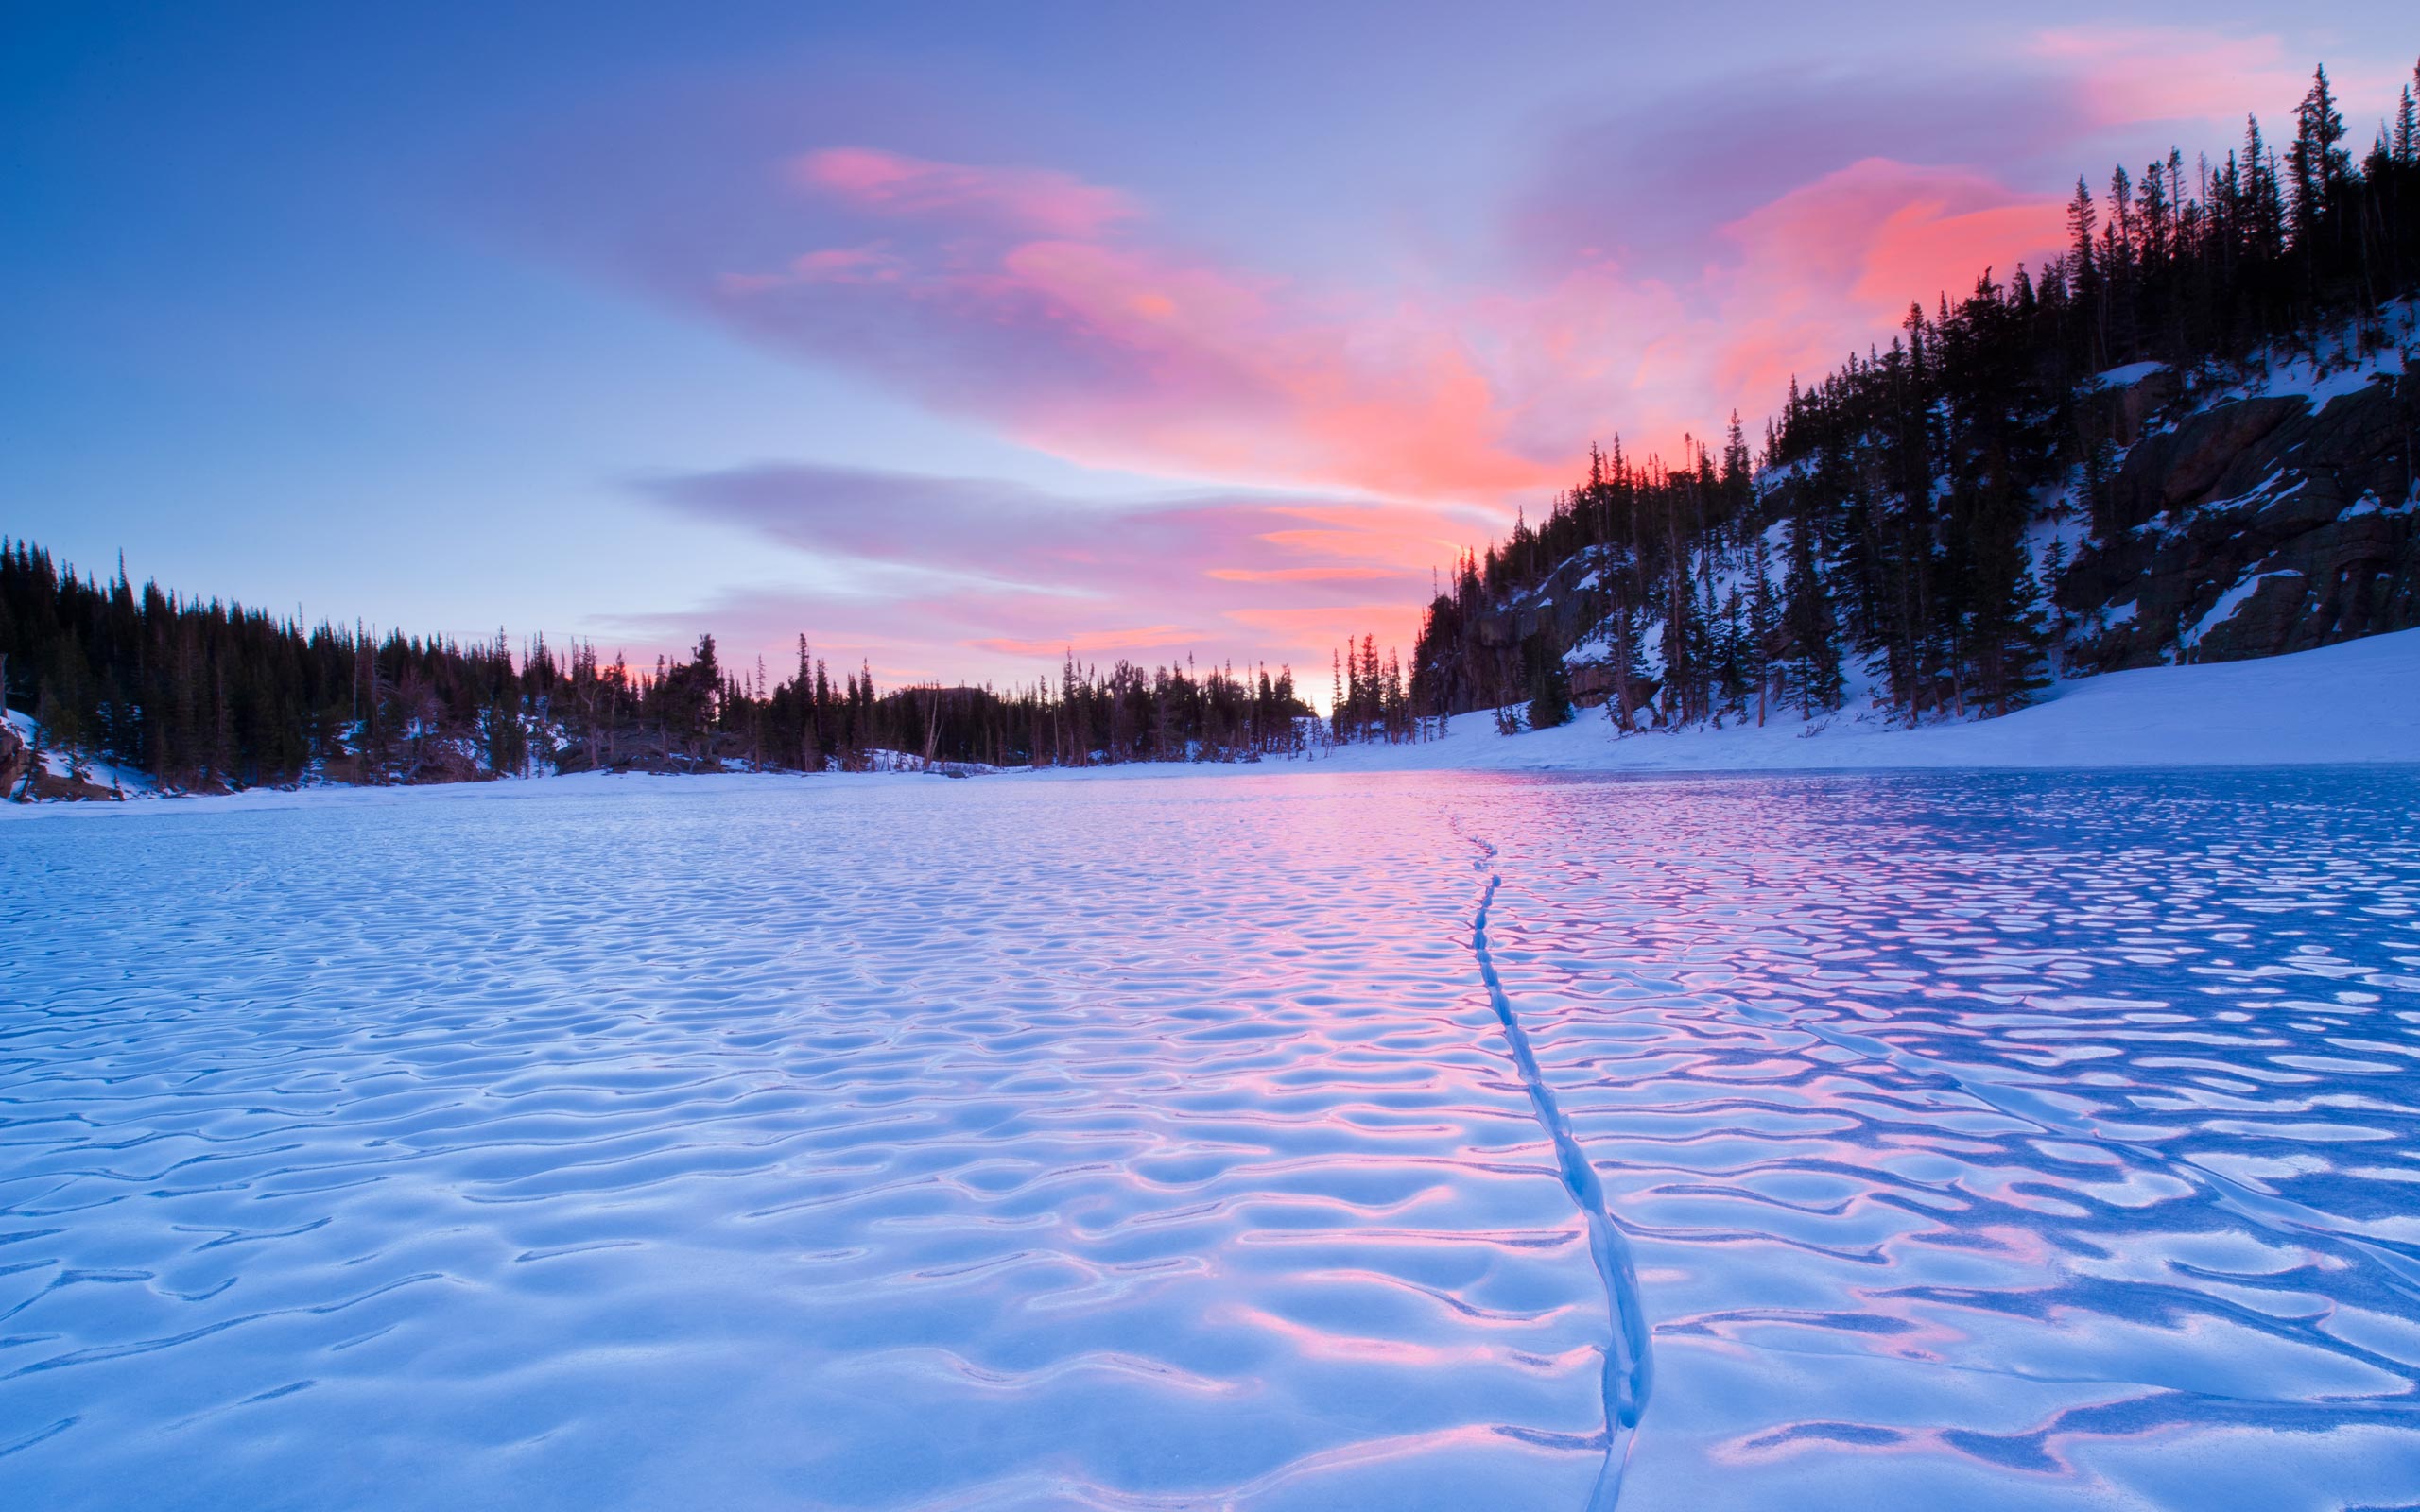 Frozen Lake Wallpaper